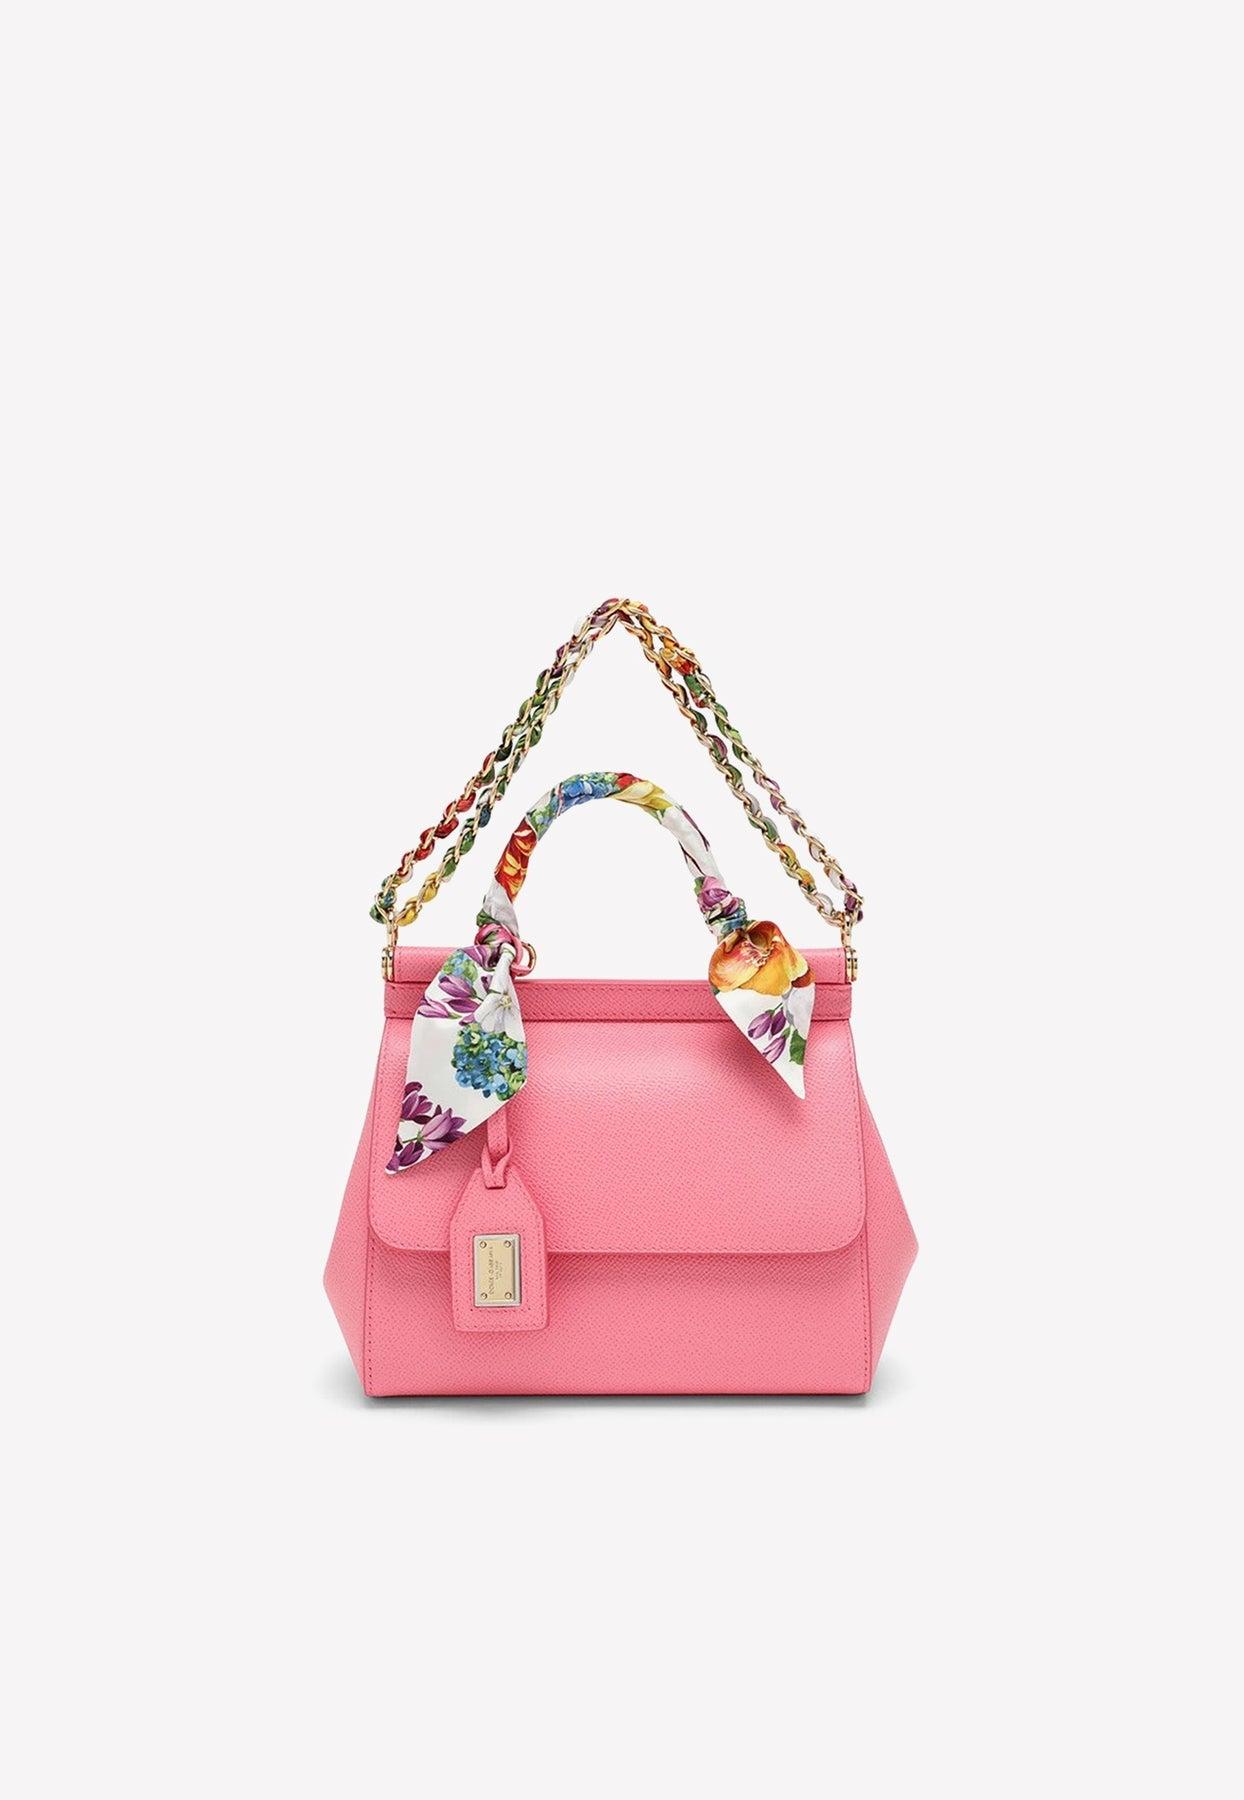 Small Sicily handbag in Pink